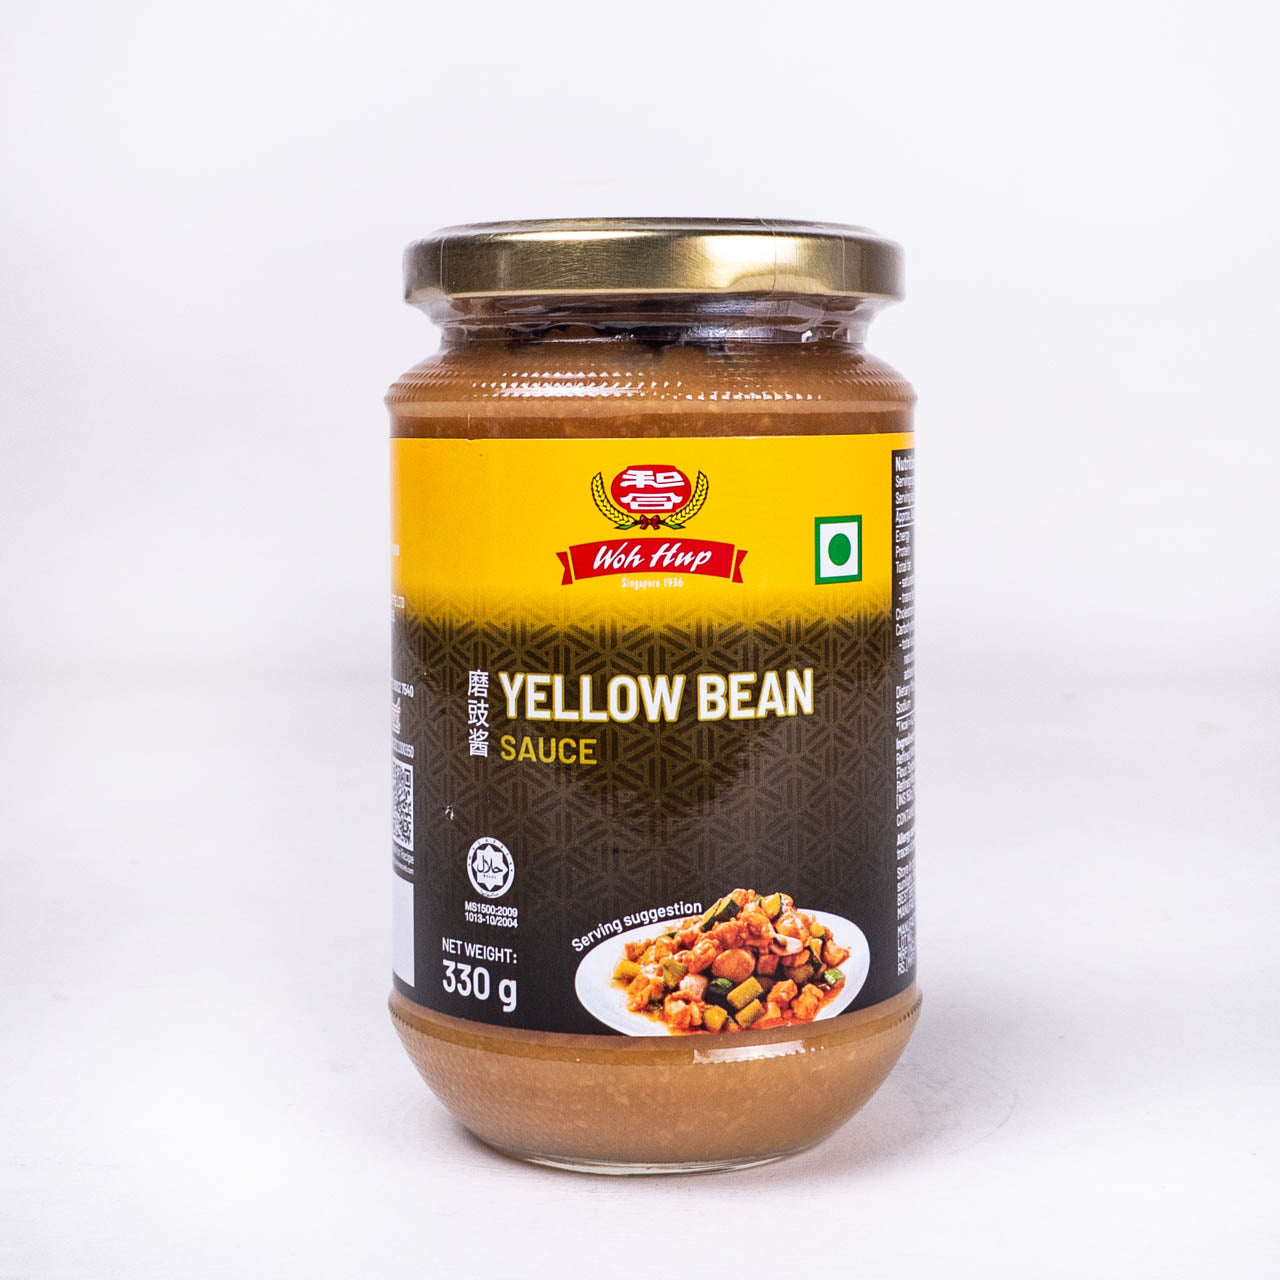 Yellow Bean Sauce